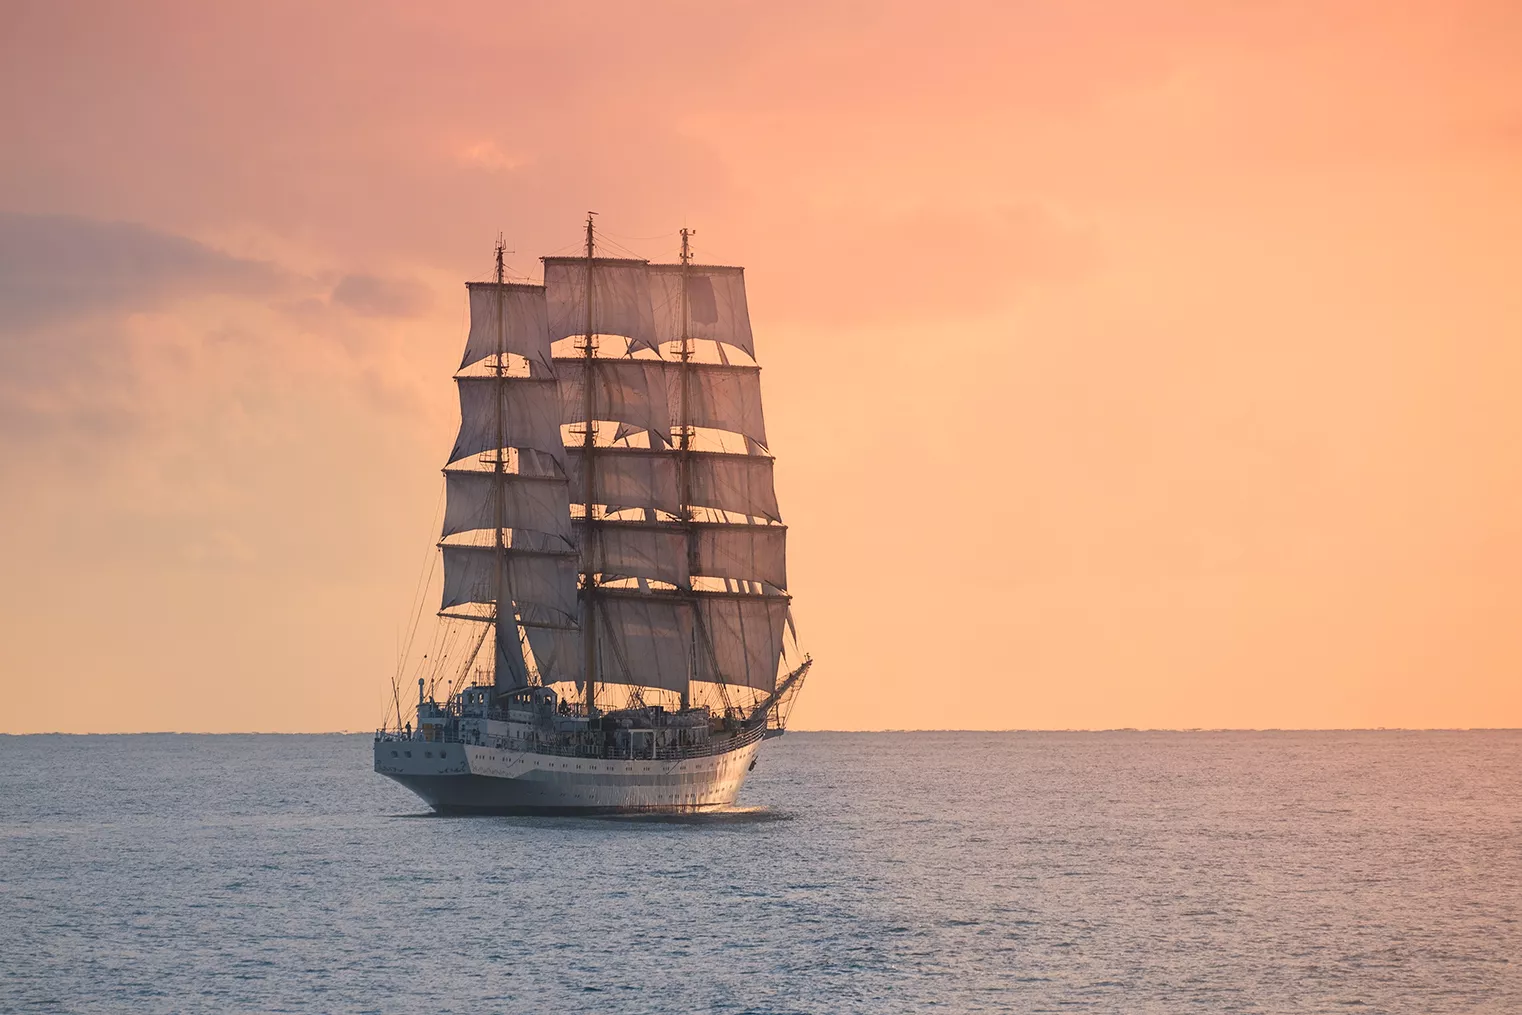 El bergantí 'Mary Celeste' va ser trobat sense tripulants, un misteri amb moltes incògnites que mai no es van resoldre